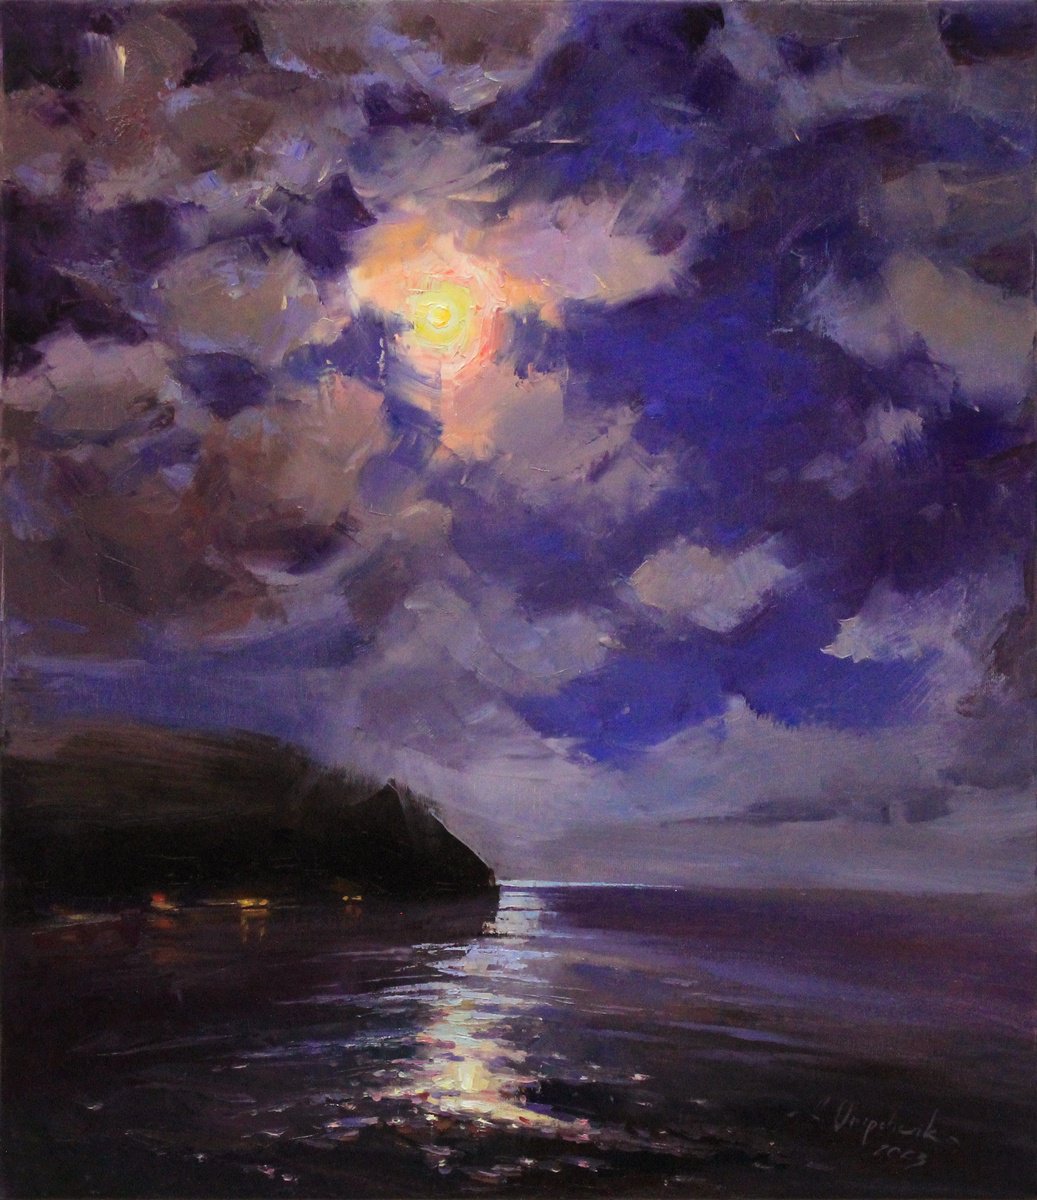 Night in the bay by Alisa Onipchenko-Cherniakovska